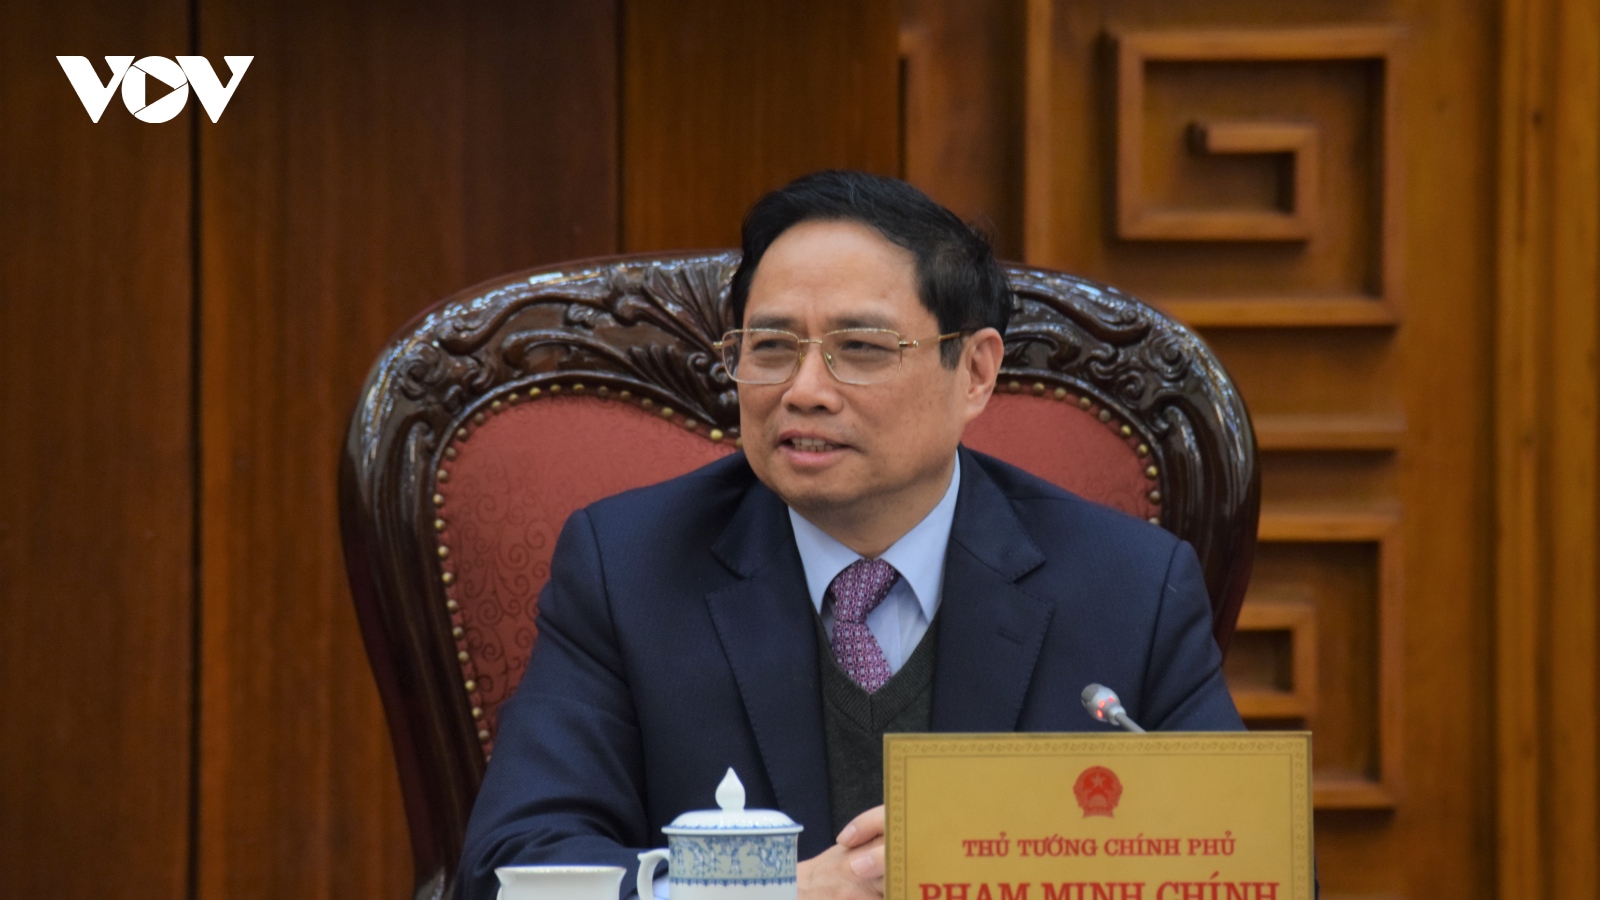 "Chính phủ coi Samsung là một hình mẫu đầu tư thành công tại Việt Nam"